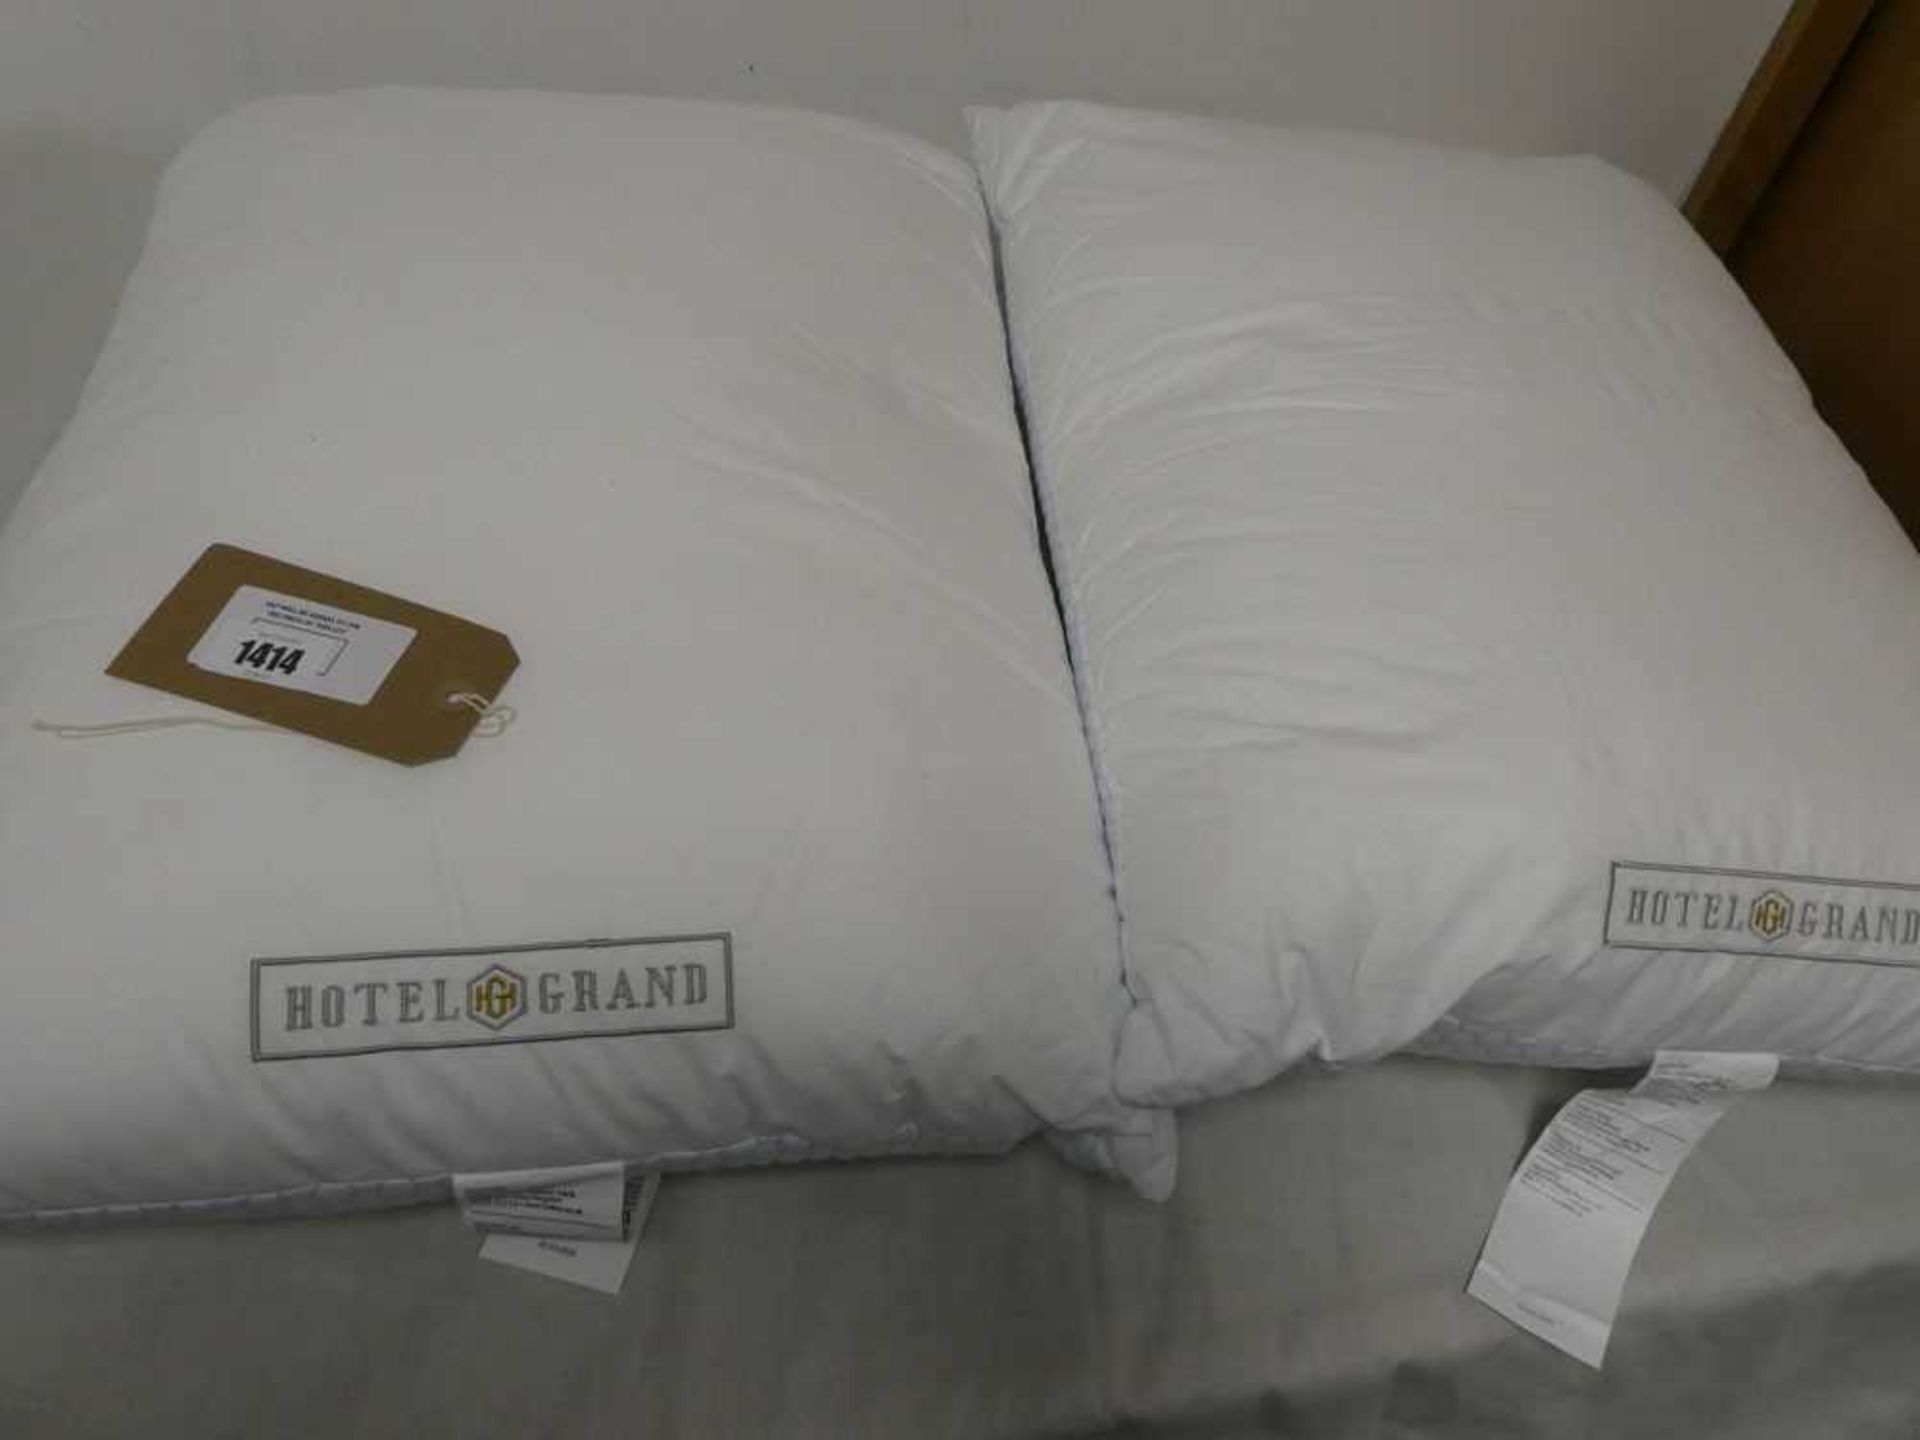 +VAT 2 Hotel Grand pillows